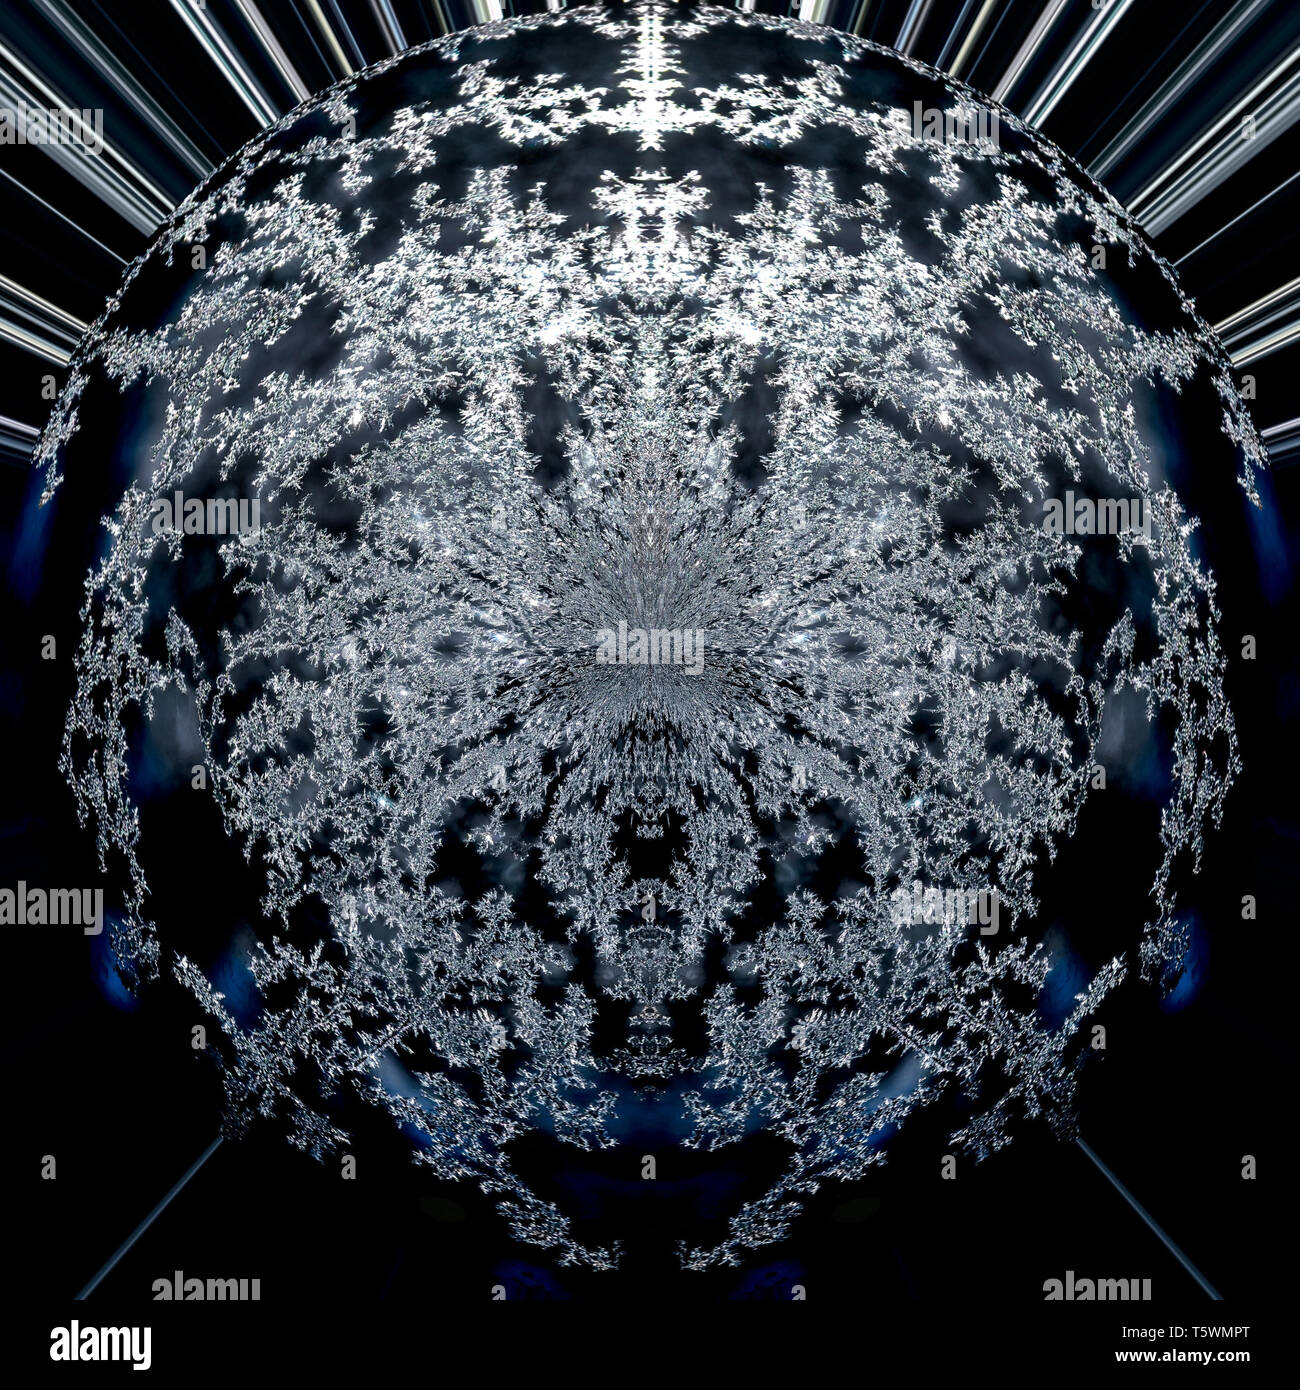 Abstract background wallart numérique moderne futuriste d'un noir, bleu et blanc, rond fractale creux planète graphique dans l'espace Banque D'Images